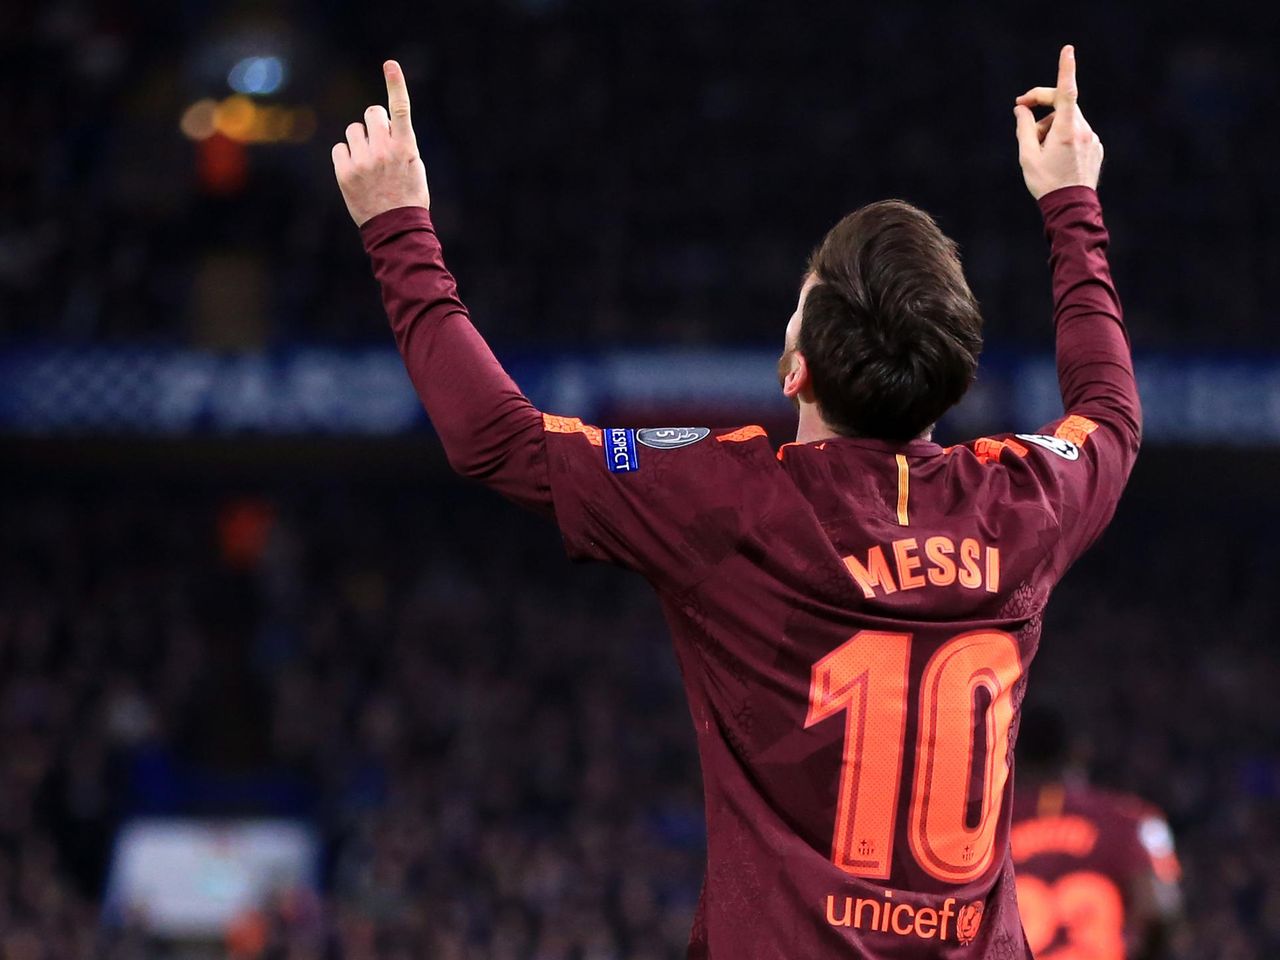 Trận đấu giữa Messi và Chelsea là một trong những trận cầu đỉnh cao của ngôi sao bóng đá này. Messi Chelsea game sẽ đưa bạn đến với những khoảnh khắc đầy kịch tính và độc đáo của một trận đấu quyết định. Hãy xem và cảm nhận những đặc trưng riêng của ngôi sao này.